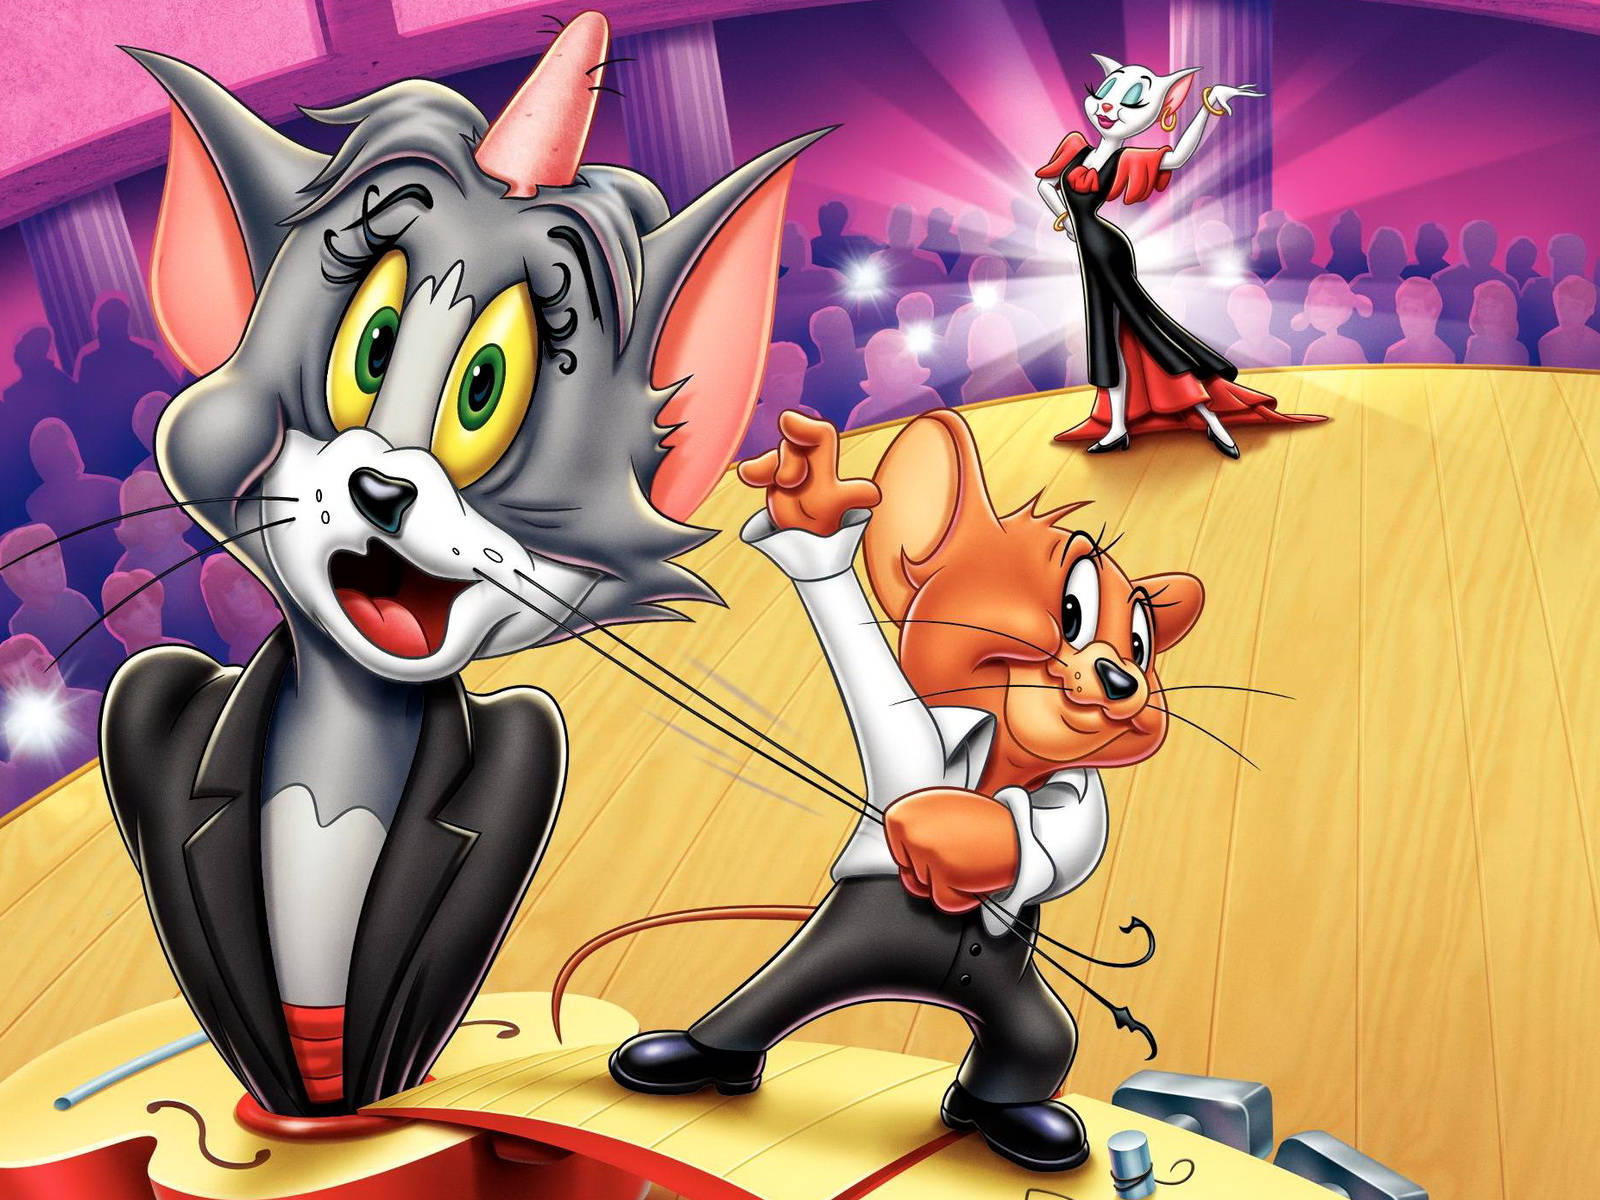 Tom og Jerry iPhone On Stage tapet: Dette bemærkelsesværdige tapet bringer to af de mest kendte tegneseriefigurer til scenen. Wallpaper